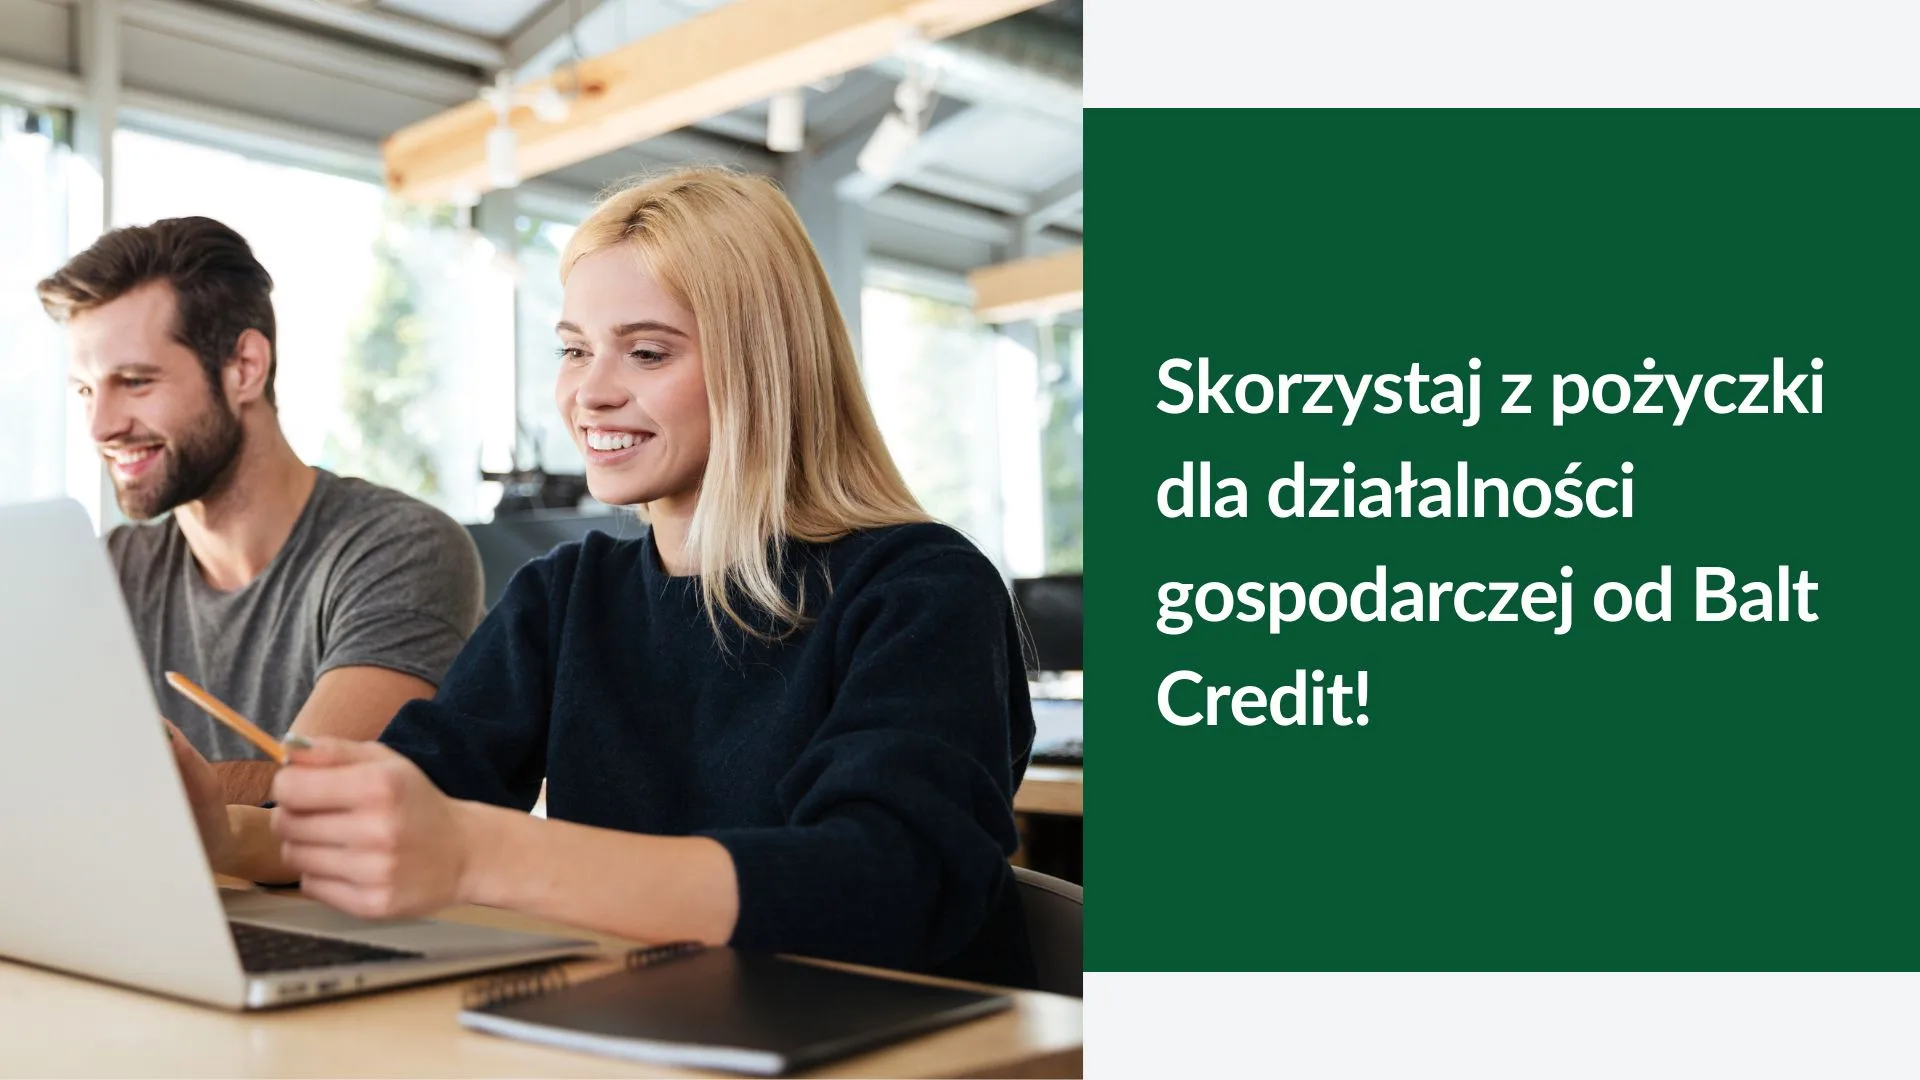 Skorzystaj z pożyczki dla działalności gospodarczej od Balt Credit! 